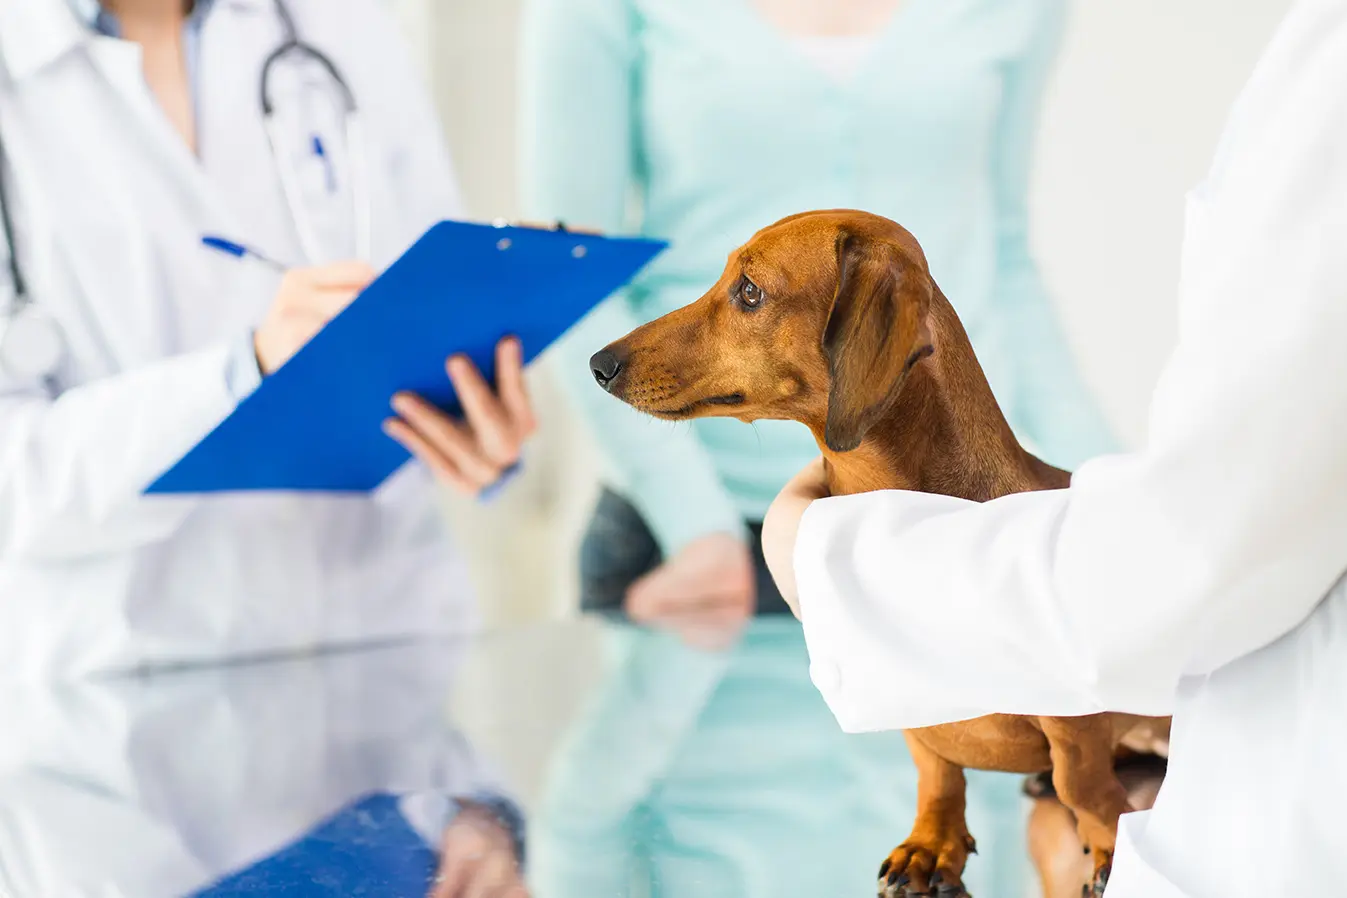 Manfaat Sterilisasi Anjing yang Perlu Dipahami